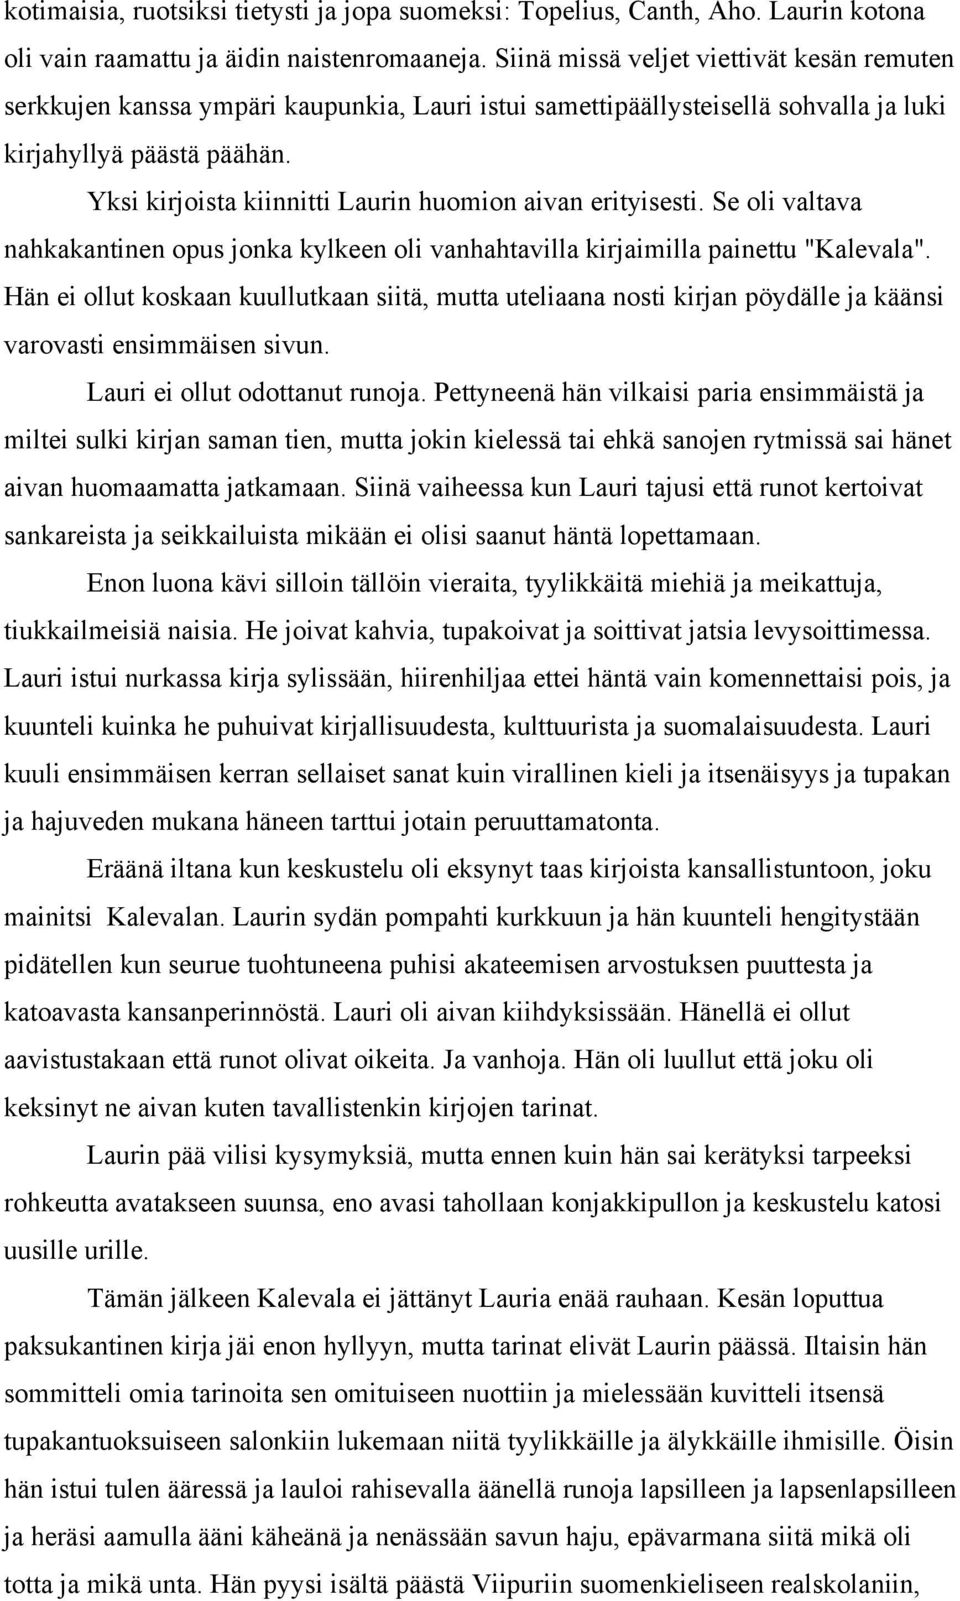 Yksi kirjoista kiinnitti Laurin huomion aivan erityisesti. Se oli valtava nahkakantinen opus jonka kylkeen oli vanhahtavilla kirjaimilla painettu "Kalevala".